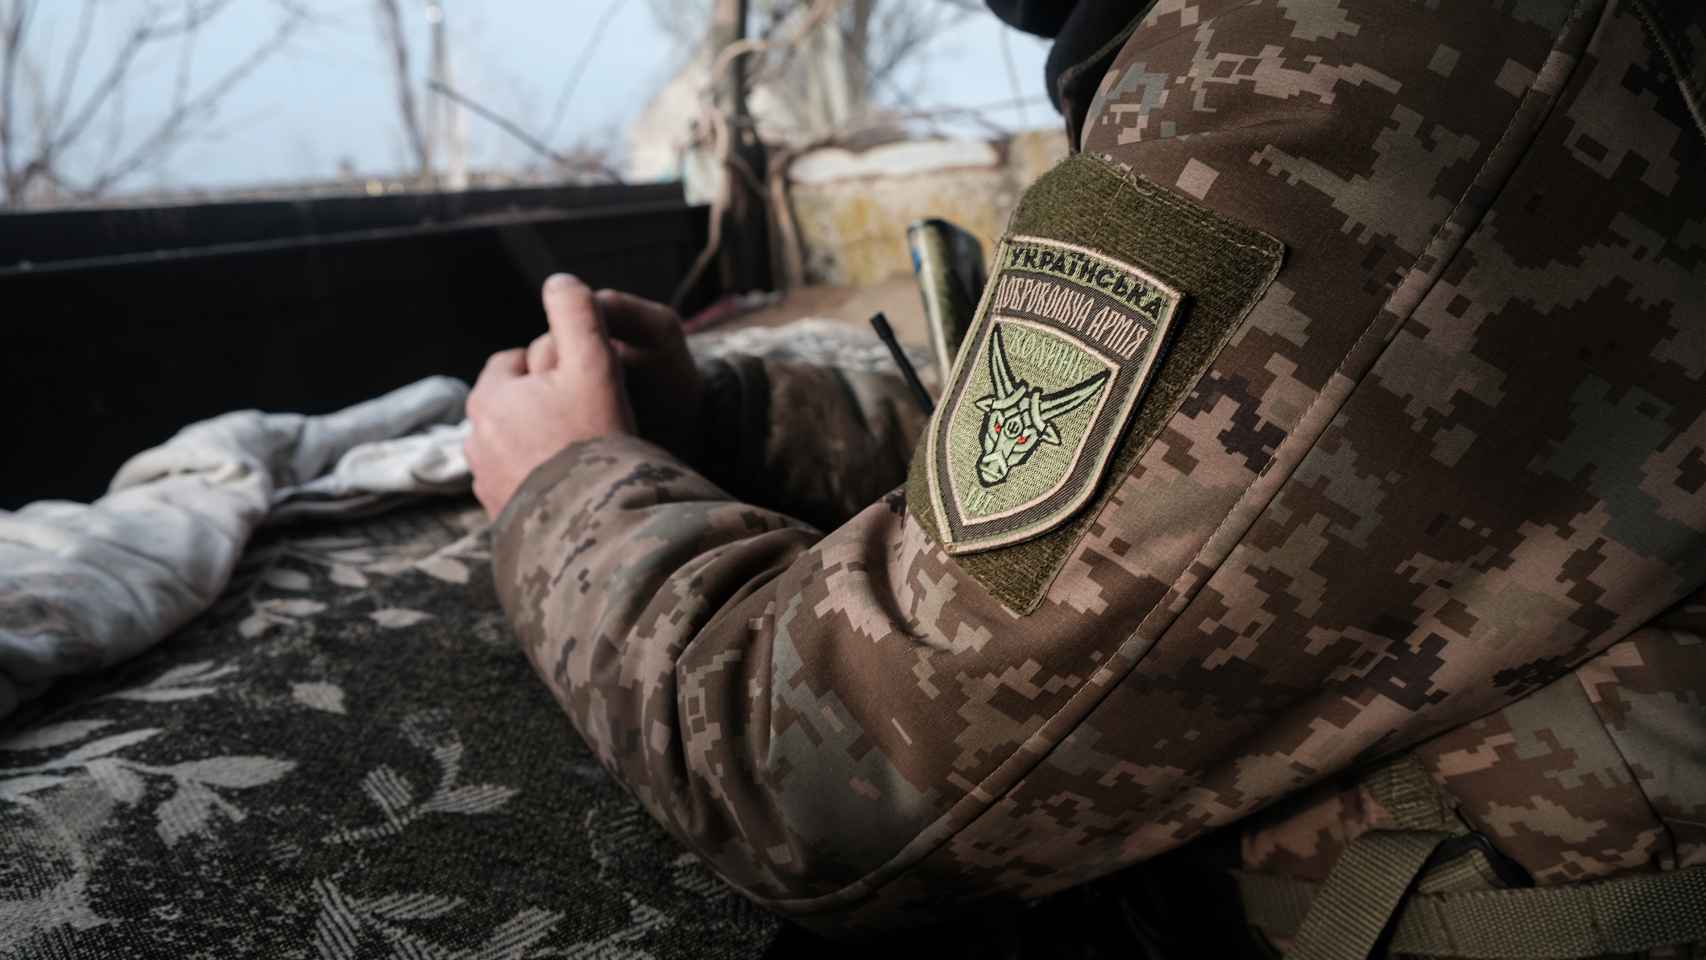 Detalle de la Insignia del 3er Batallón separado “Volyn” del Ejército de Voluntarios de Ucrania.